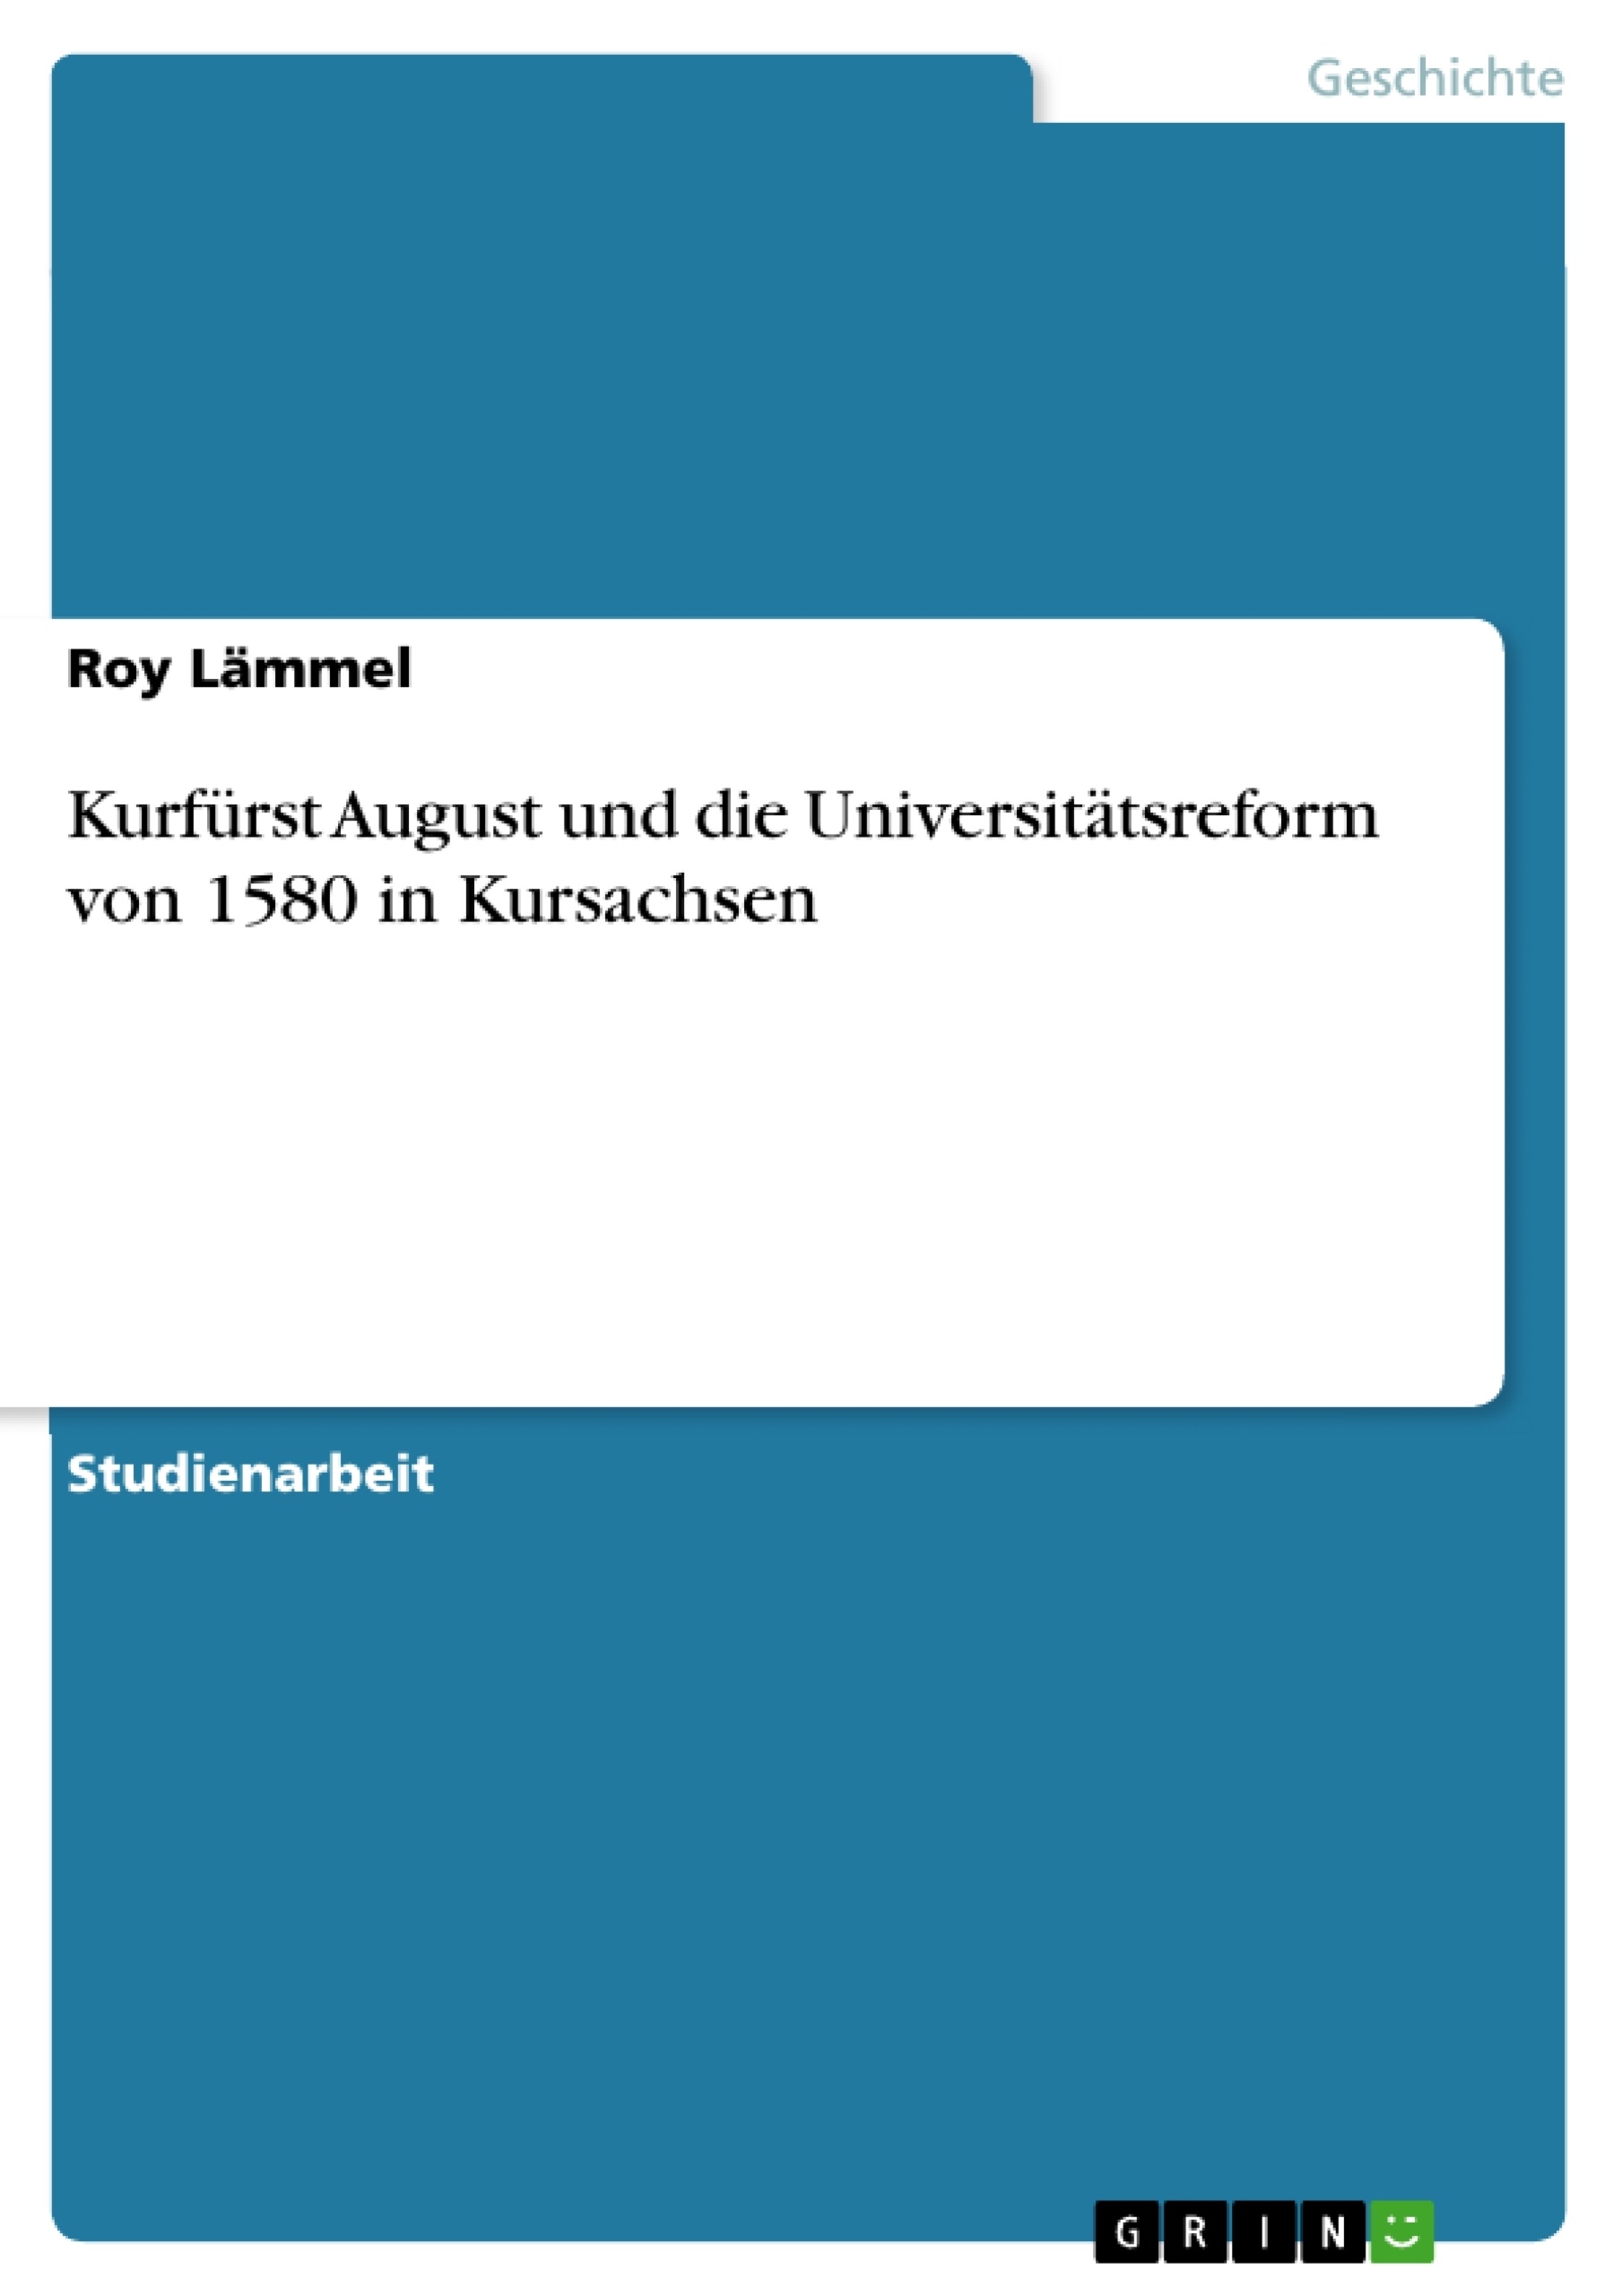 Título: Kurfürst August und die Universitätsreform von 1580 in Kursachsen